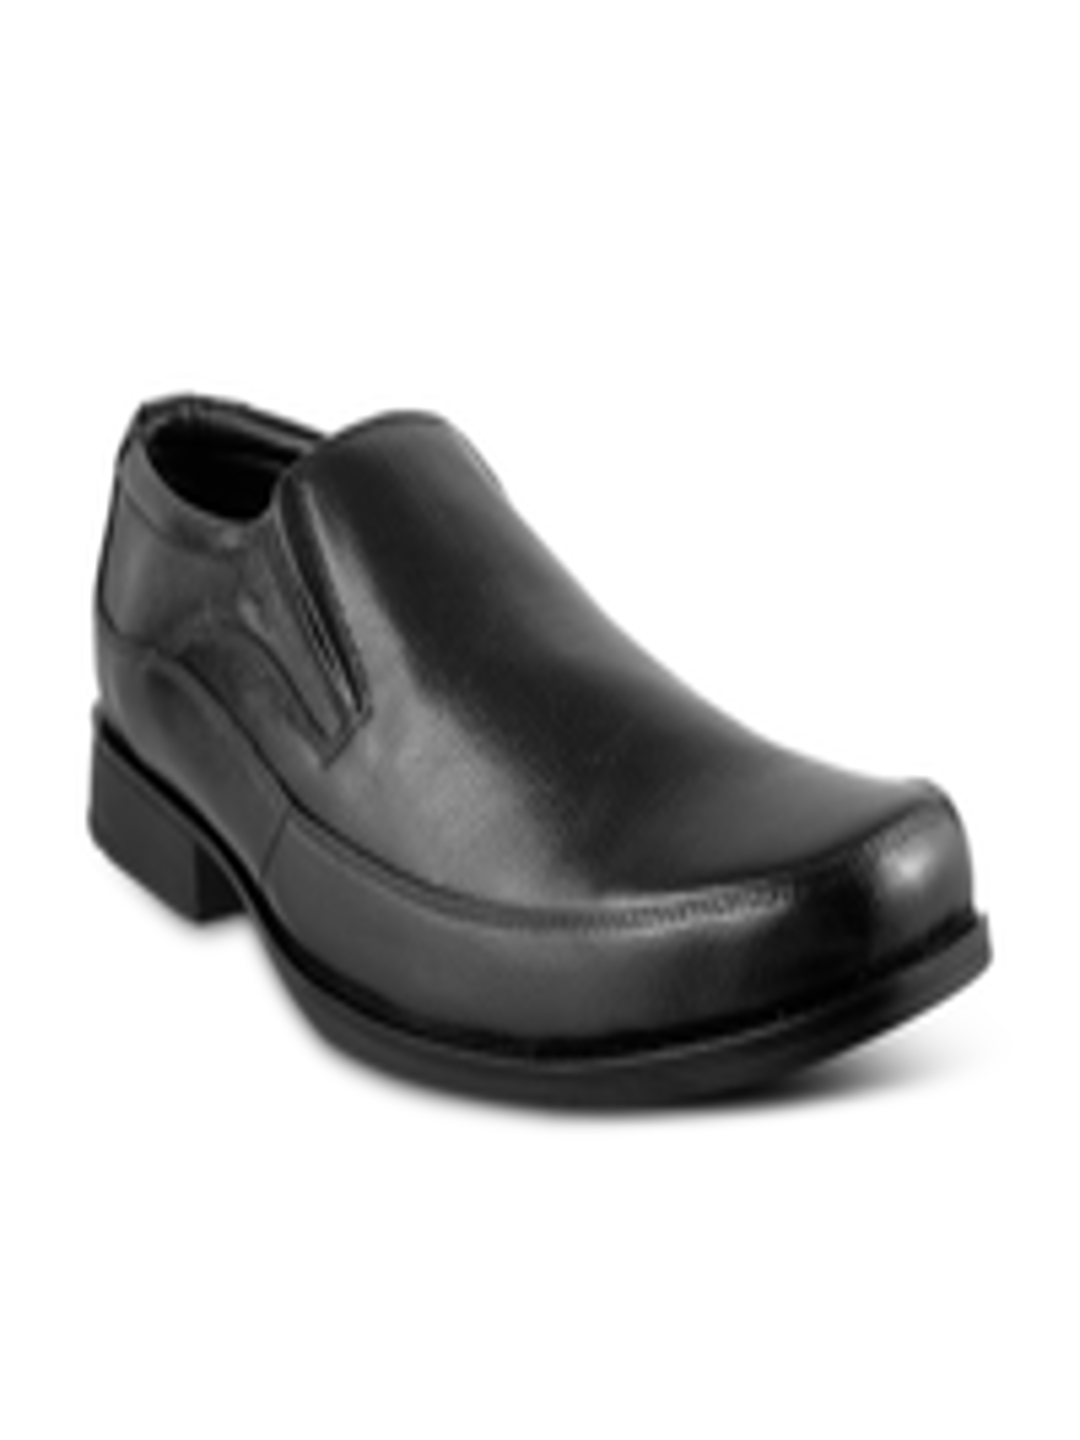 Buy Mochi Men Black Leather Formal Shoes - Formal Shoes for Men 1821779 ...